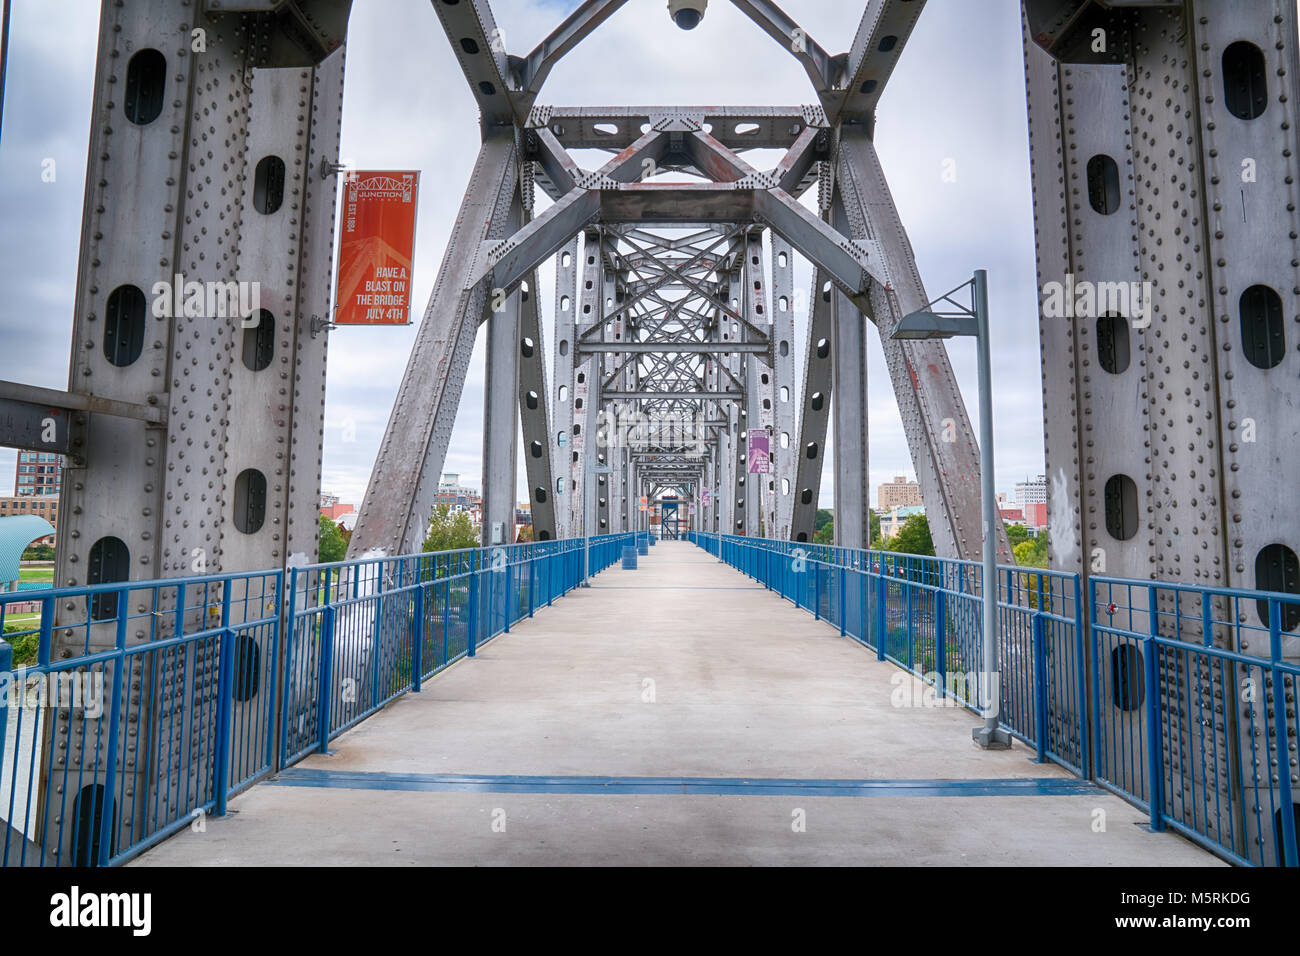 LITTLE ROCK, AR - 11. Oktober 2017: Die Brücke ist ein historisches revitalisiert Fußgängerbrücke über den Arkansas River in Little Rock, Arkansas Stockfoto